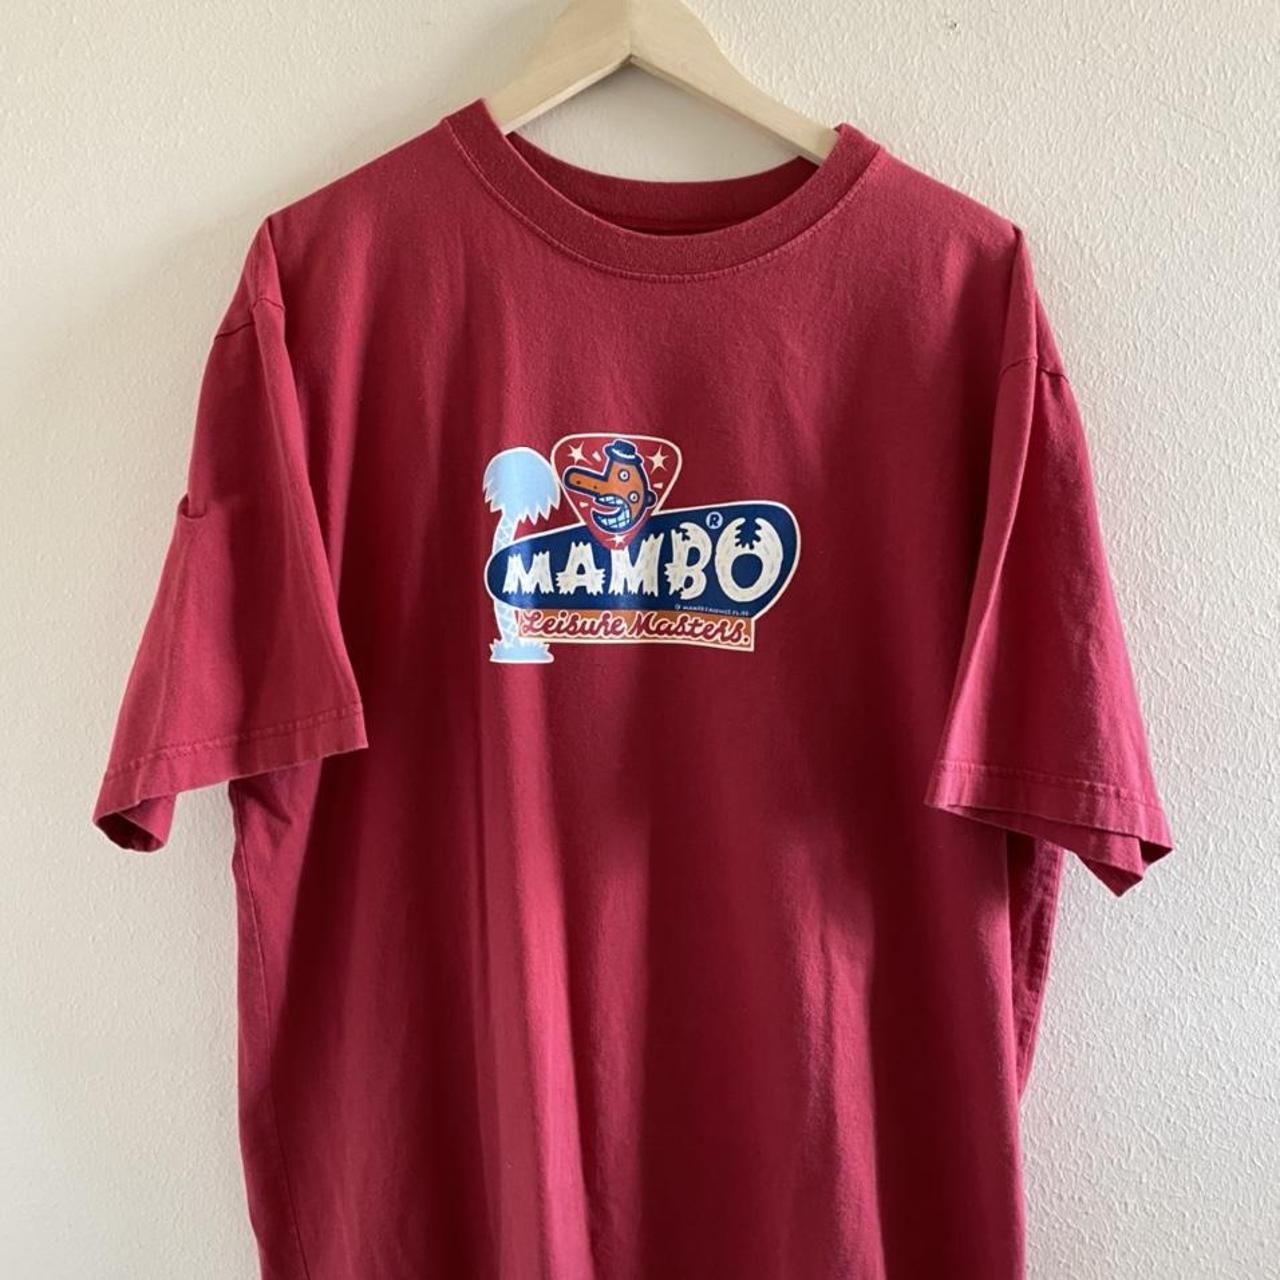 Product Image 1 - Vintage Mambo Surf Retro Shirt